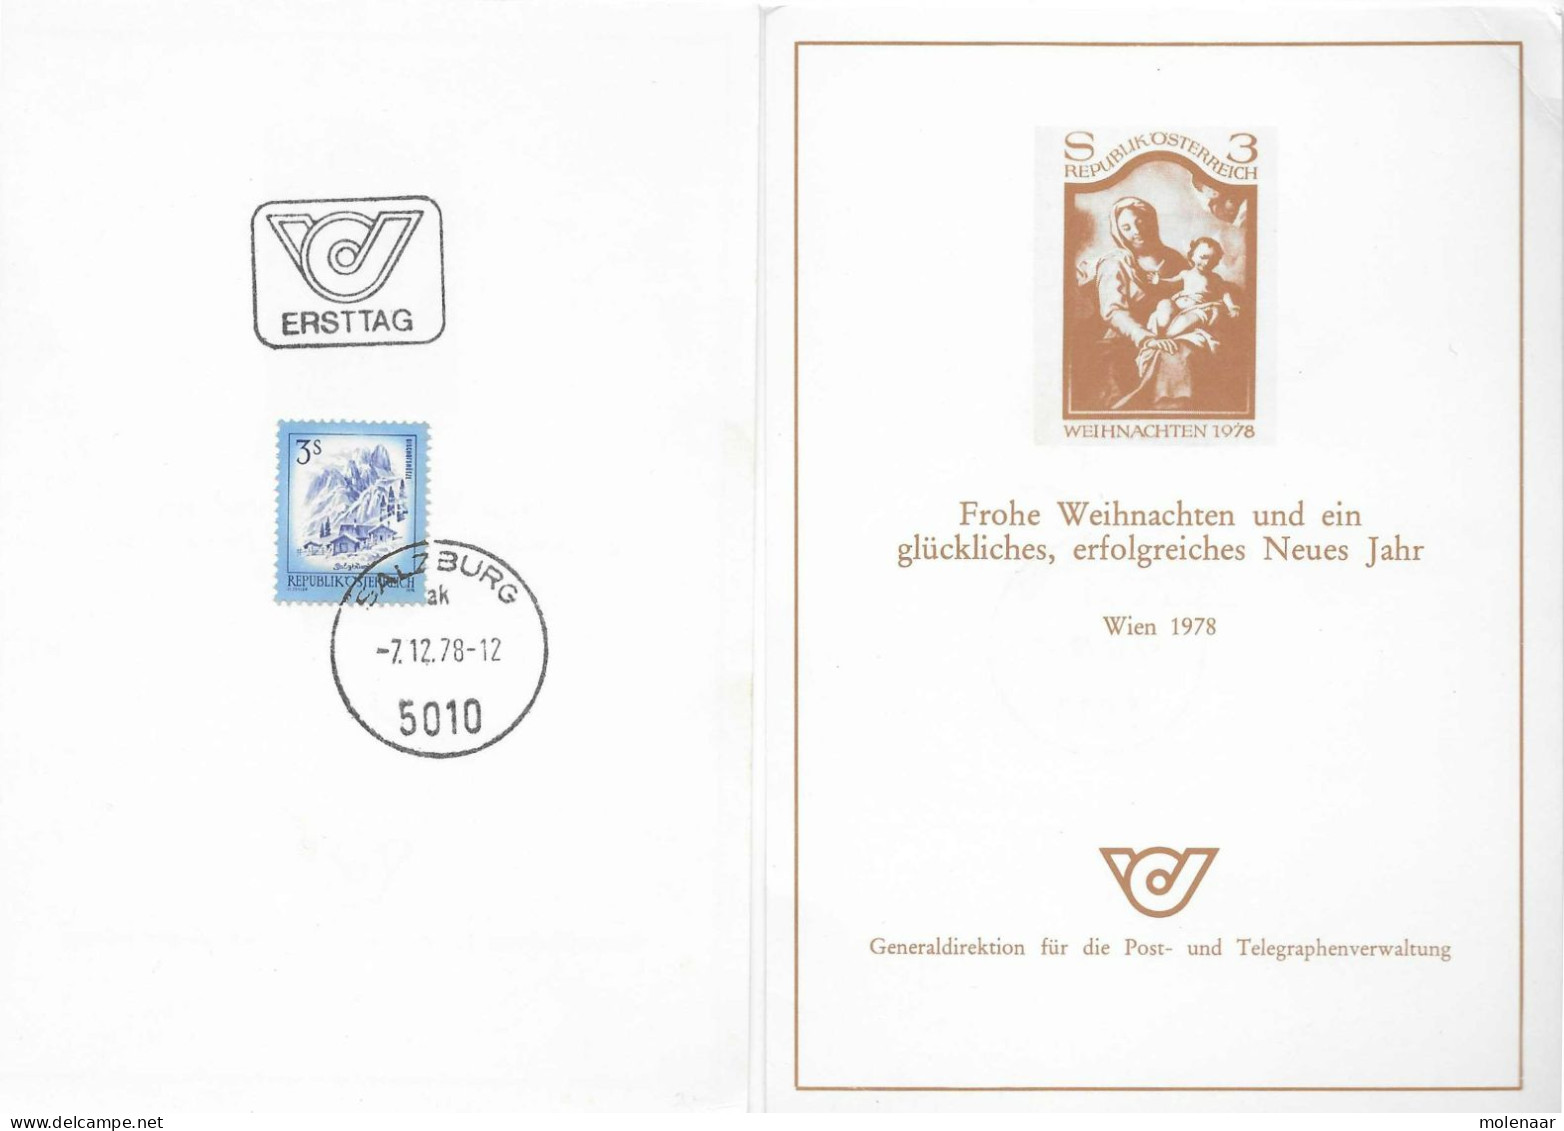 Postzegels > Europa > Oostenrijk > 1945-.... 2de Republiek > 1971-1980 > Kaart Met No. 1641 (17100) - Lettres & Documents